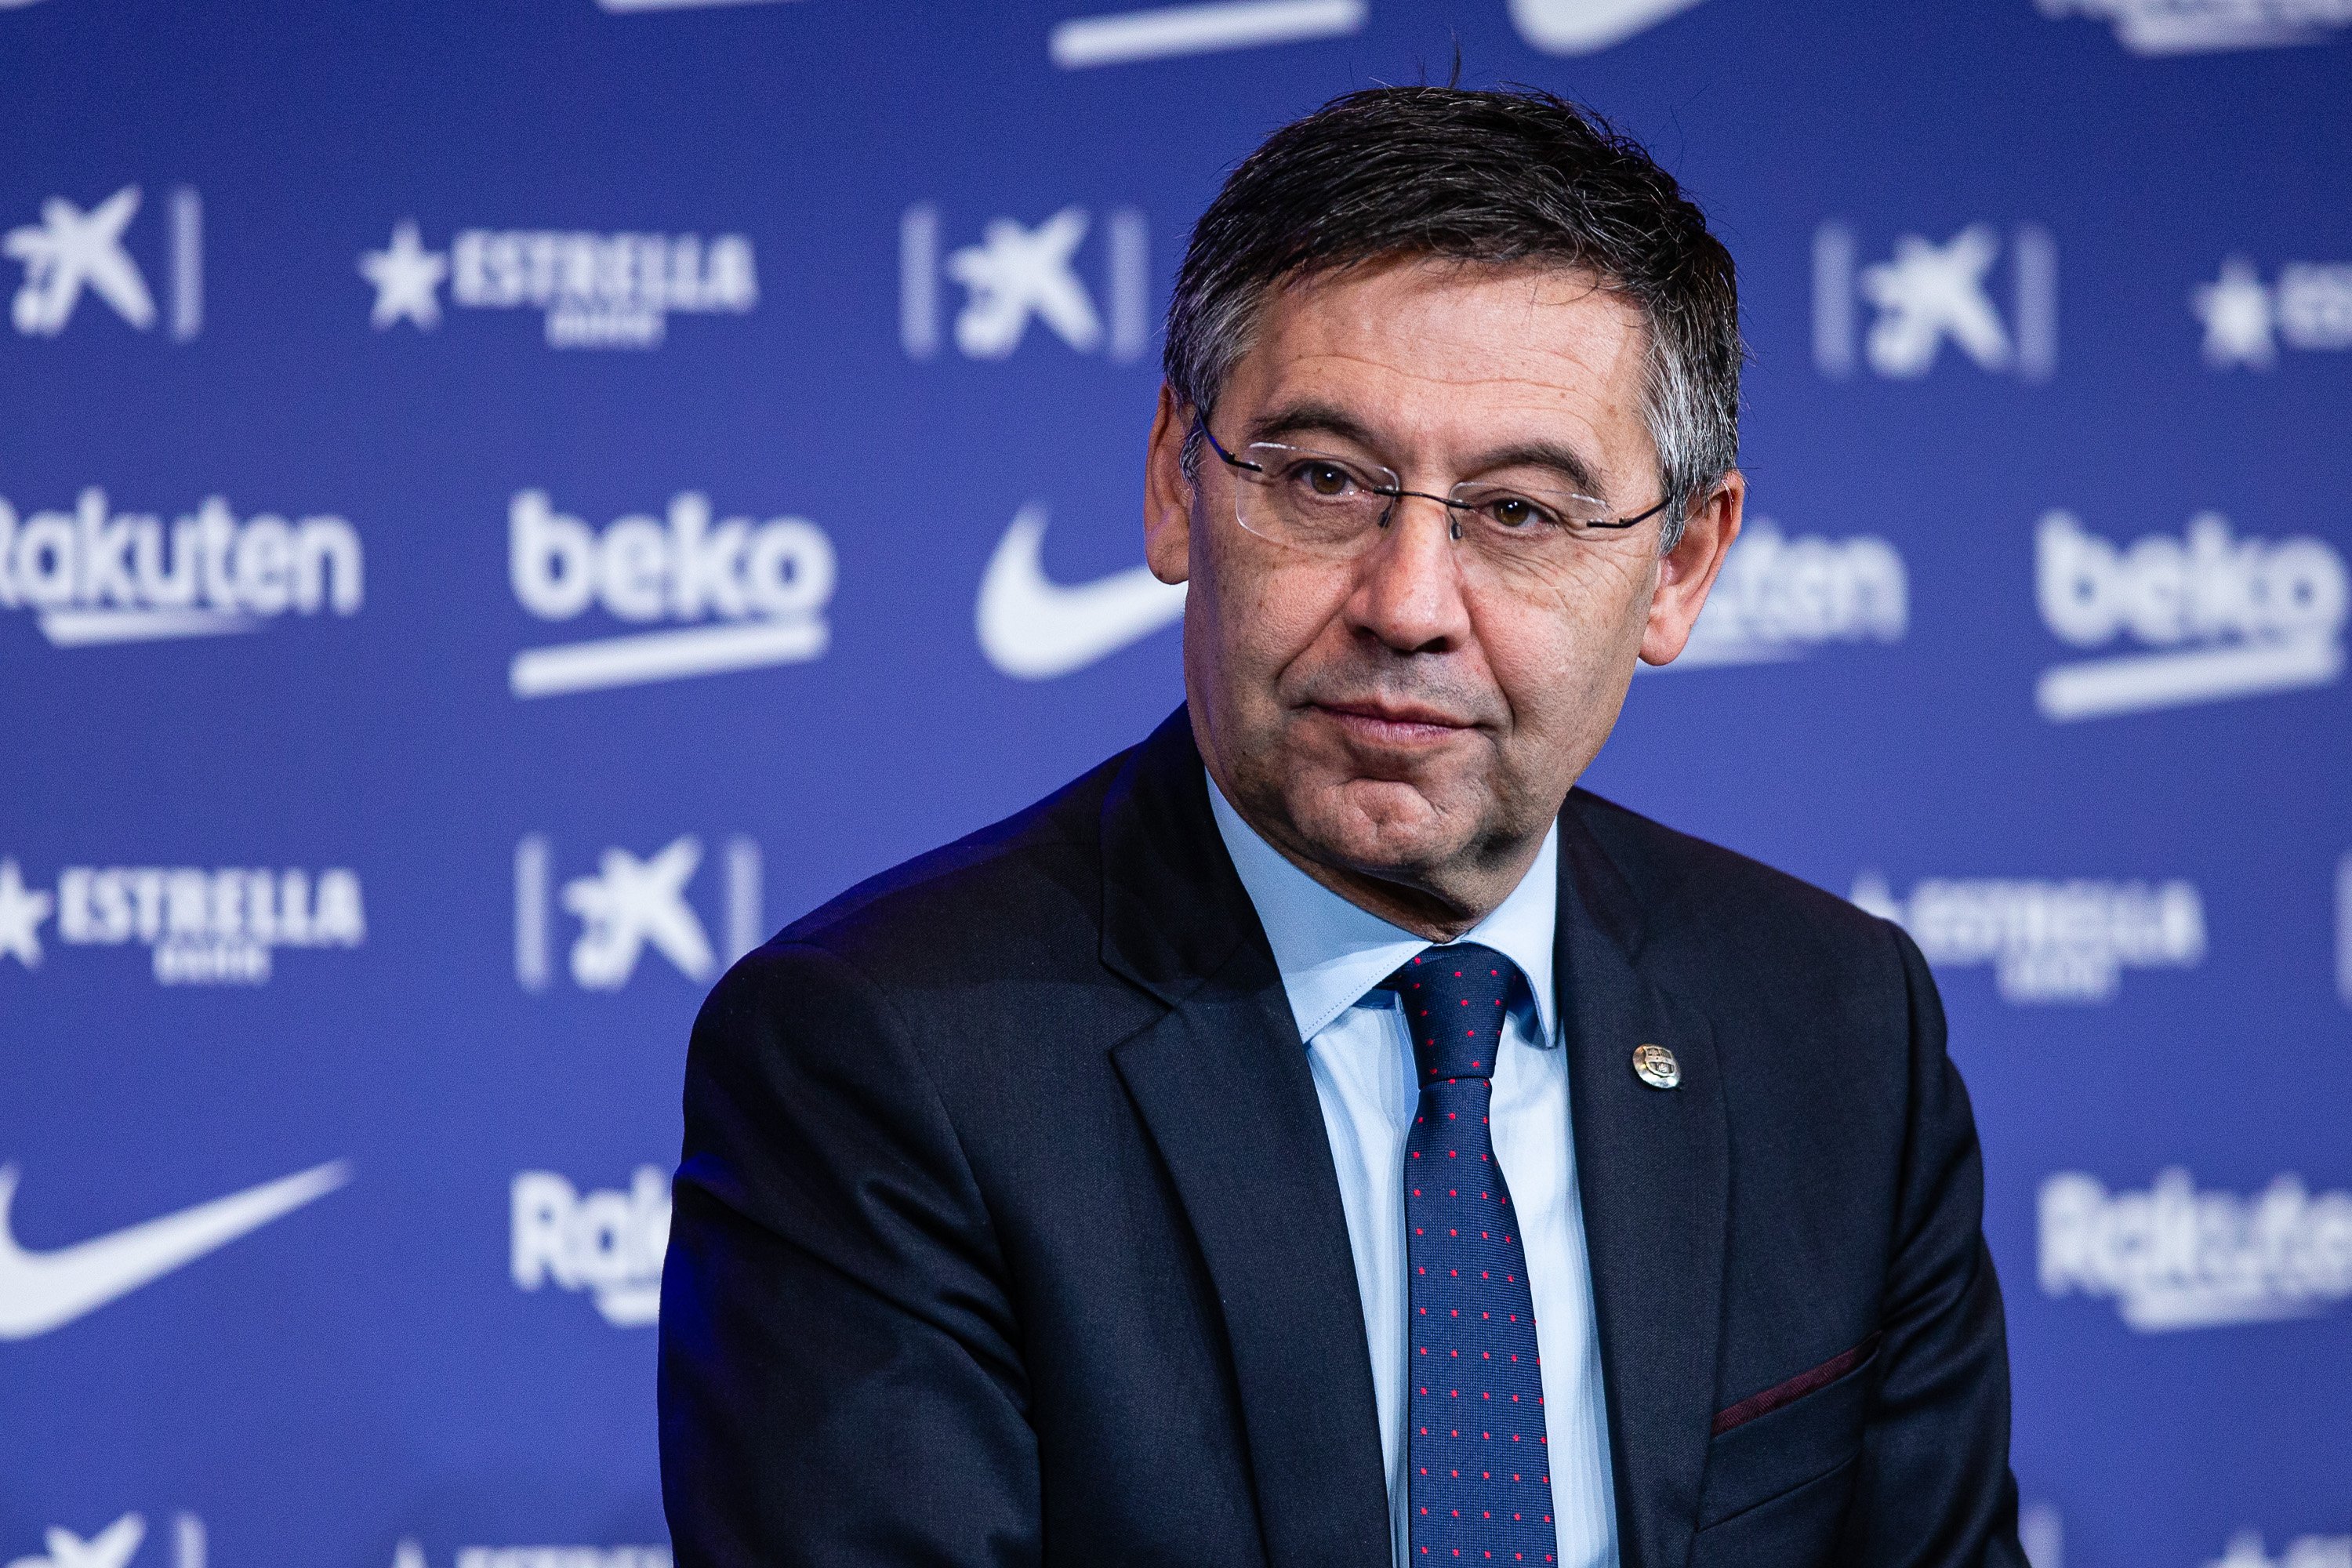 El Barça tanca l'exercici econòmic 2019/20 amb pèrdues de 97 milions d'euros